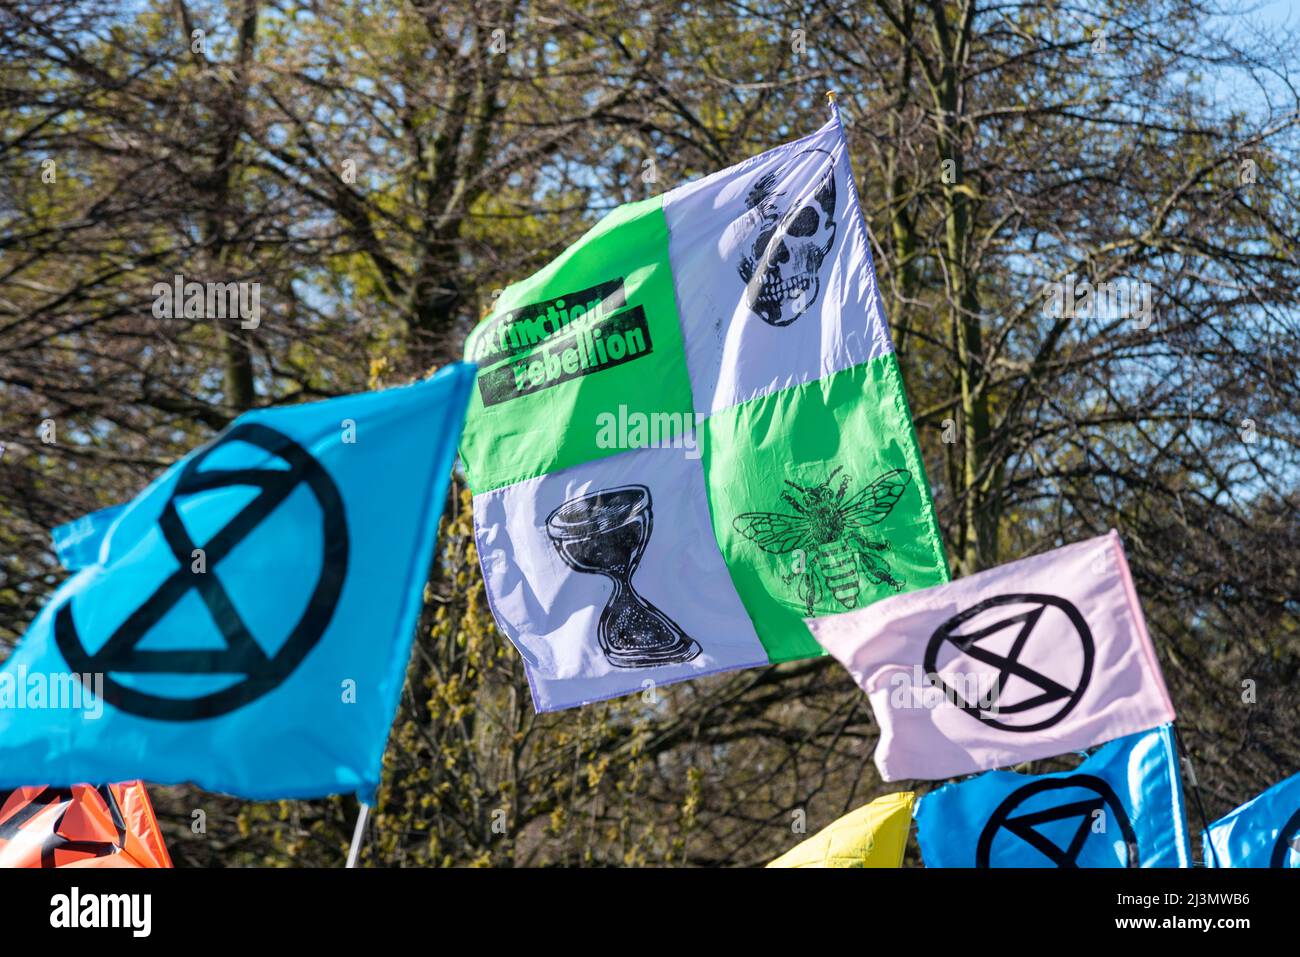 Hyde Park, London, Großbritannien. 9. April 2022. Die Demonstranten des Extinction Rebellion versammeln sich im Speakers Corner im Hyde Park vor einer Phase ziviler Widerstandsaktionen, die in London und darüber hinaus zu Störungen führen könnten, aus Protest gegen angebliche Ursachen des Klimawandels. XR-Symbol-Flags Stockfoto